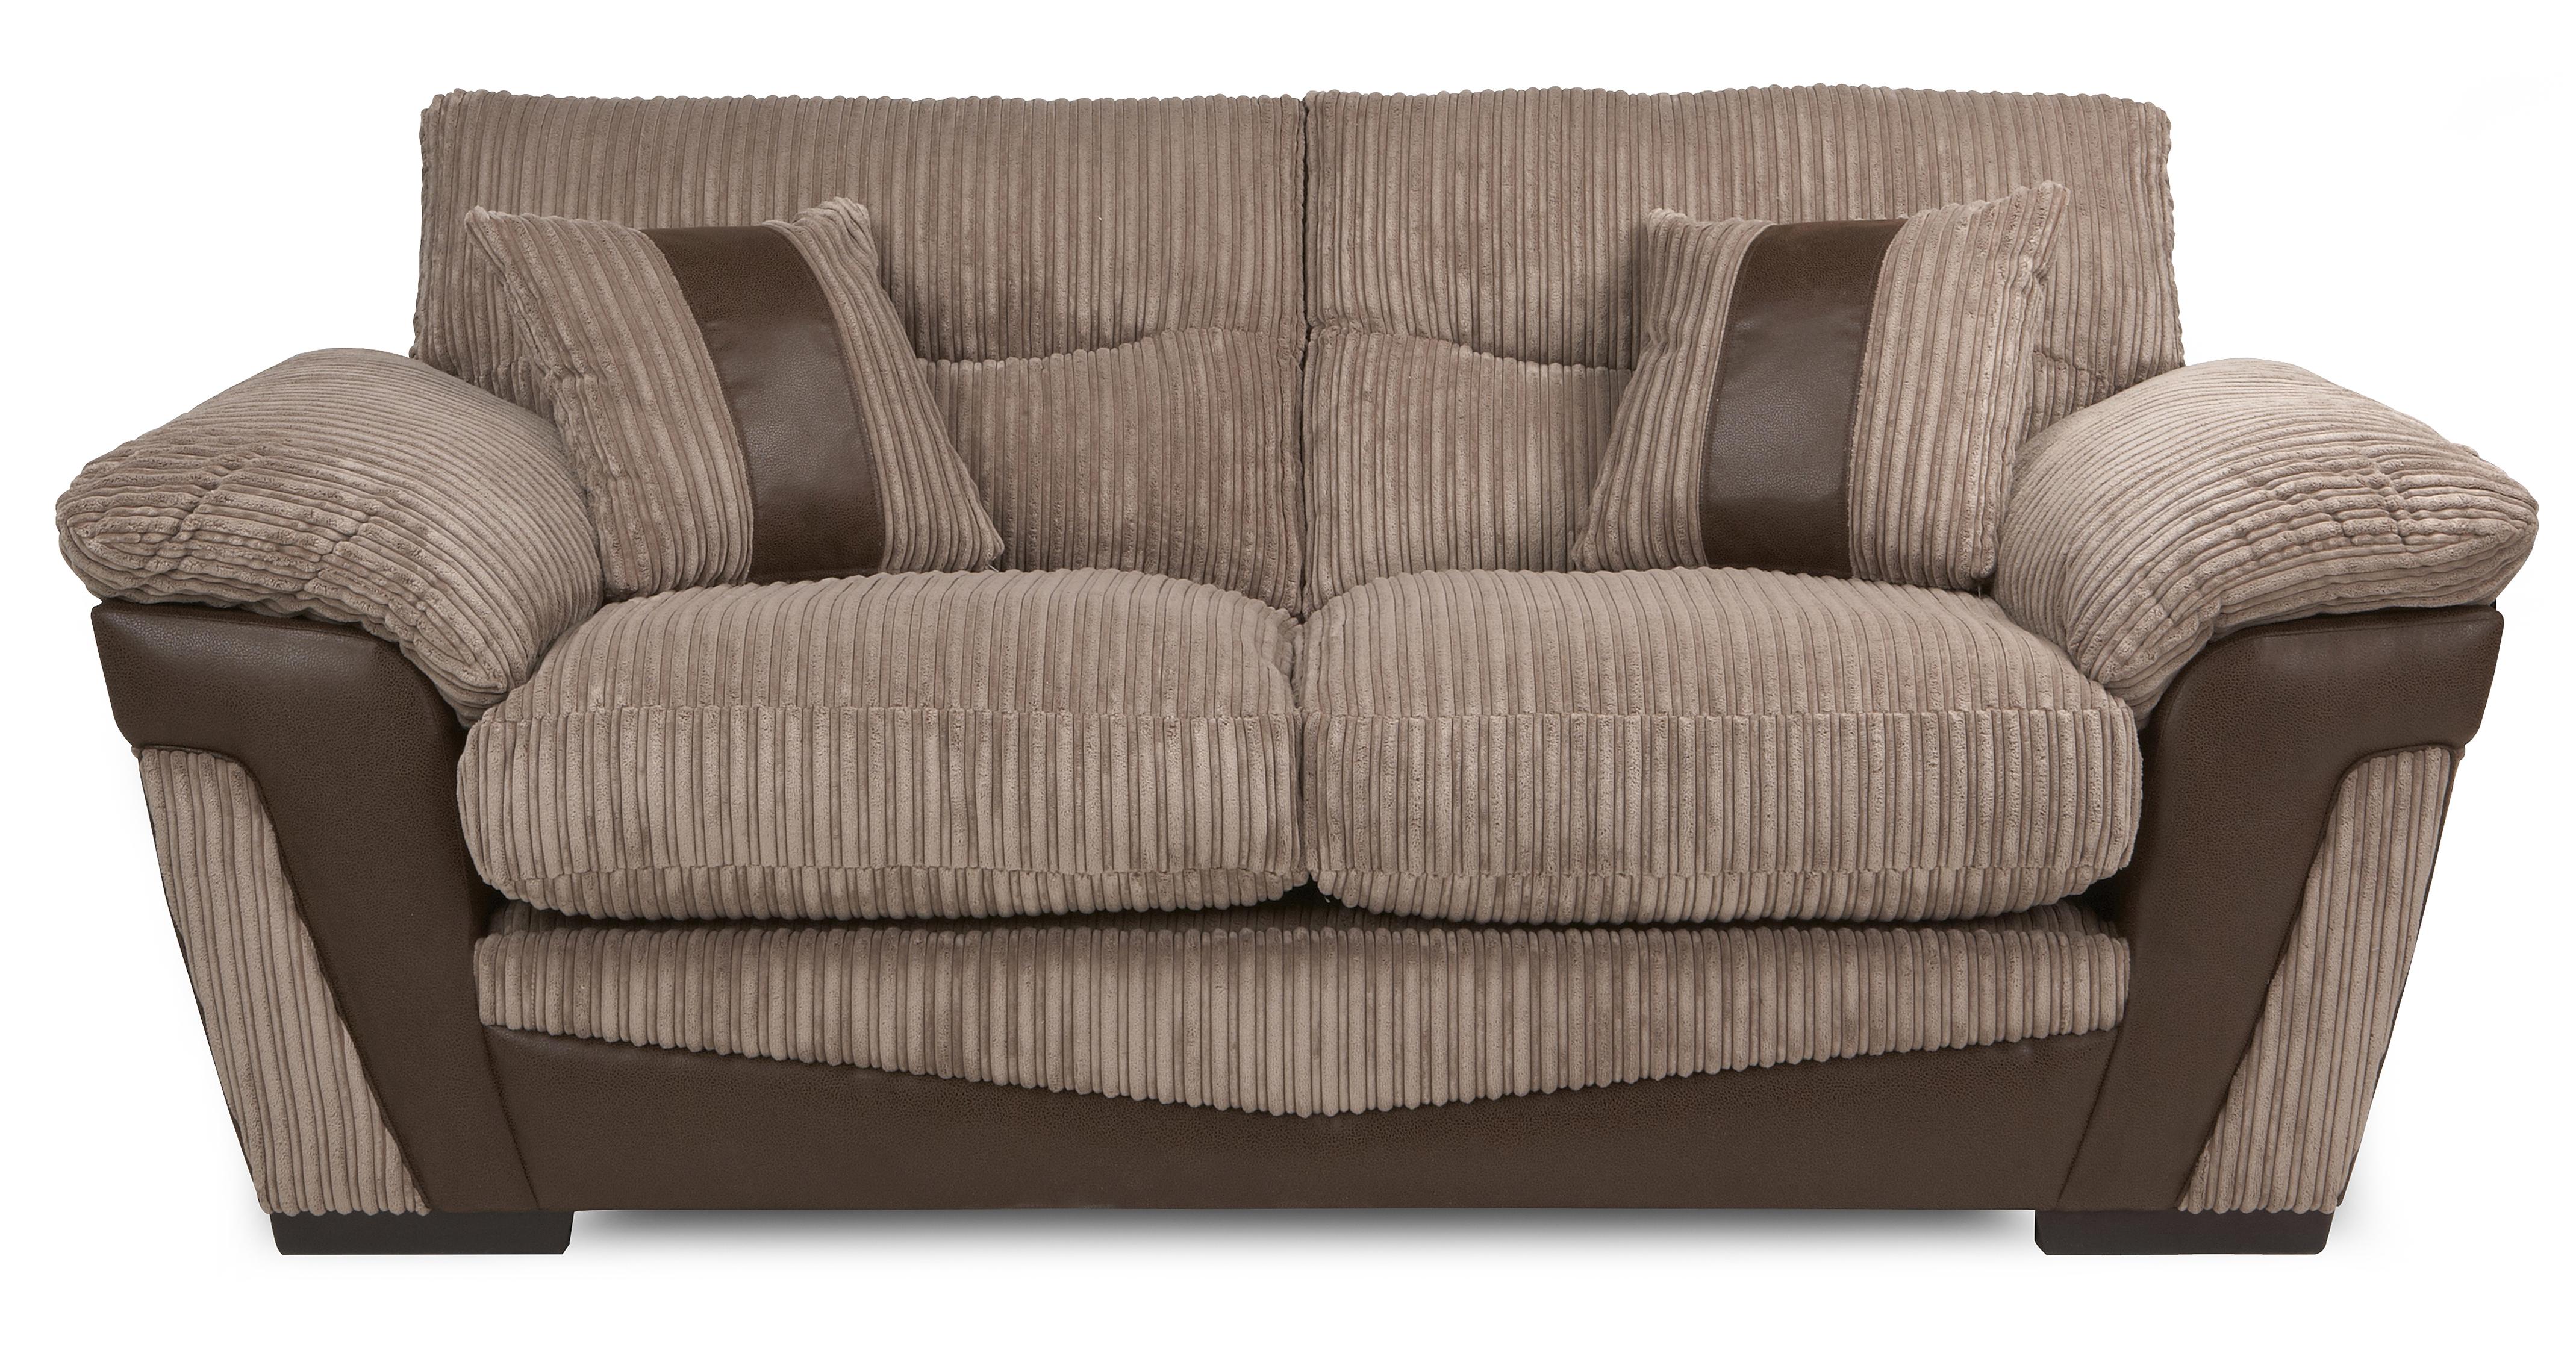 ebay uk used sofa beds